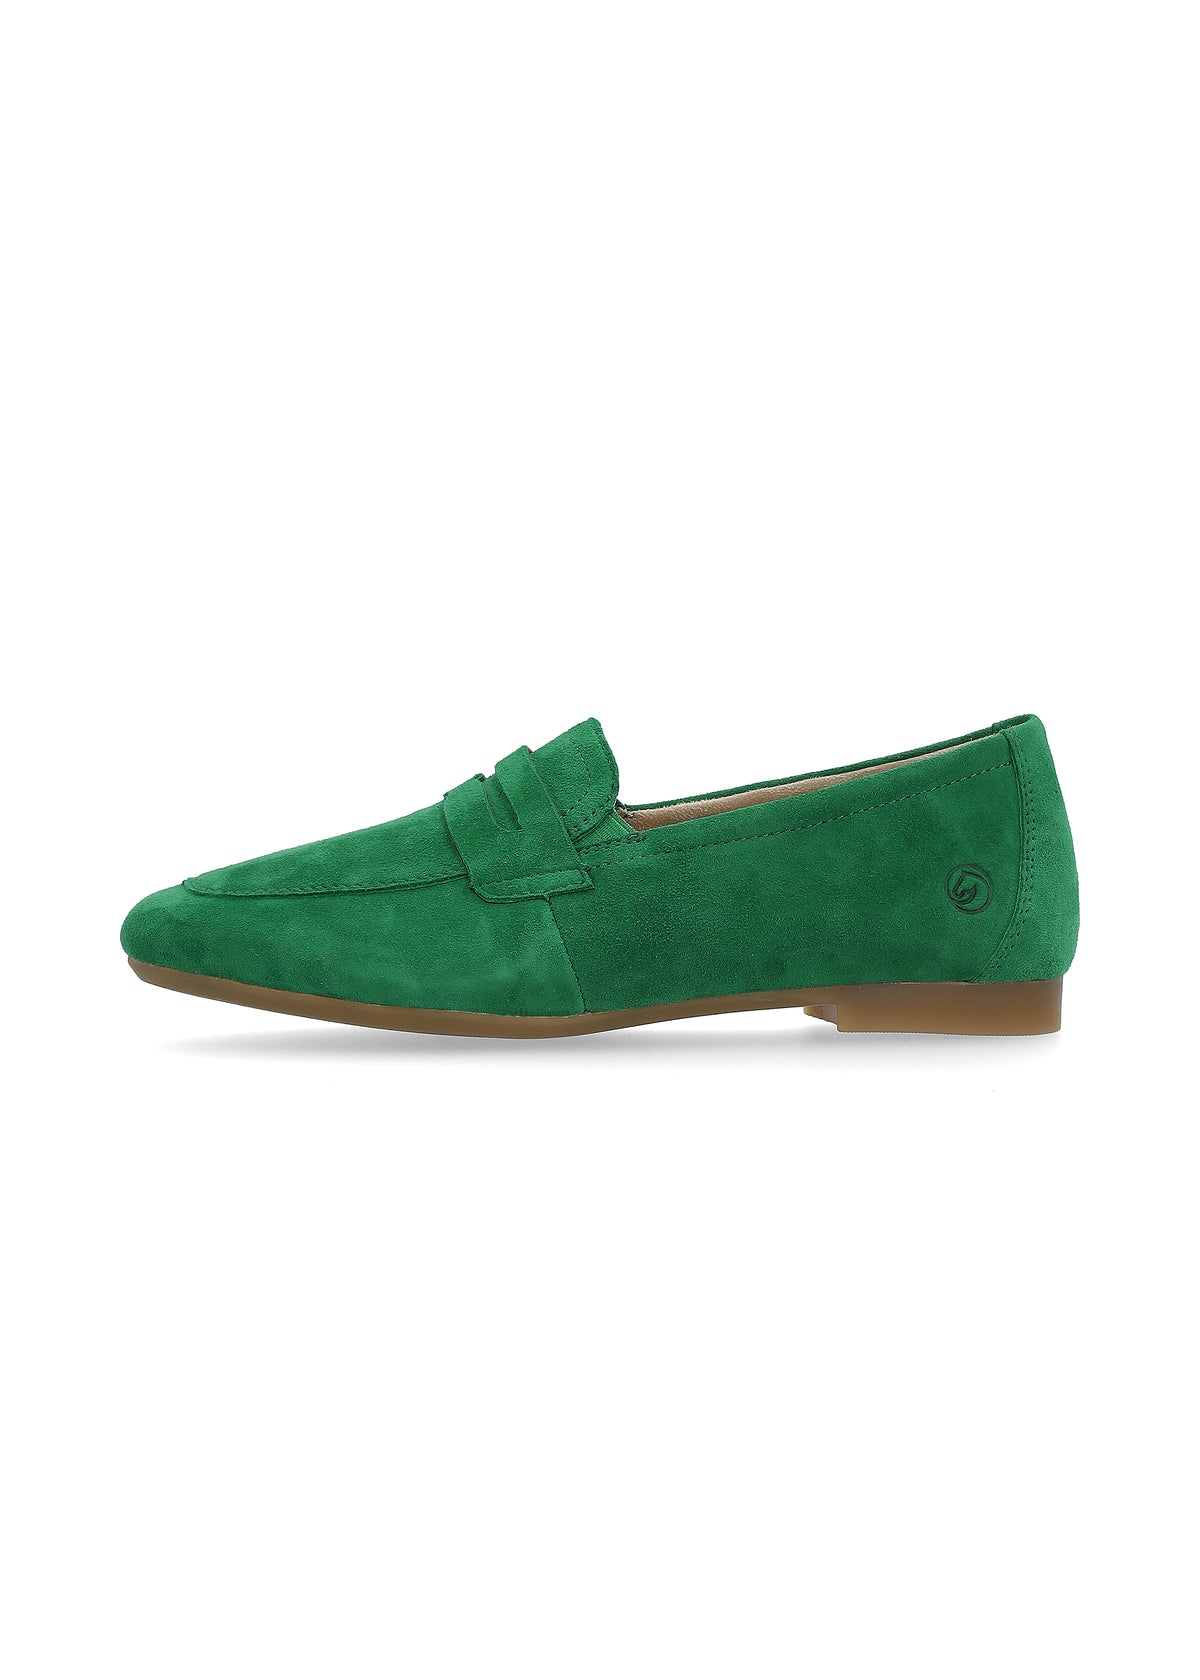 Loaferit - vihreä mokkanahka, loaferpanta koristeena